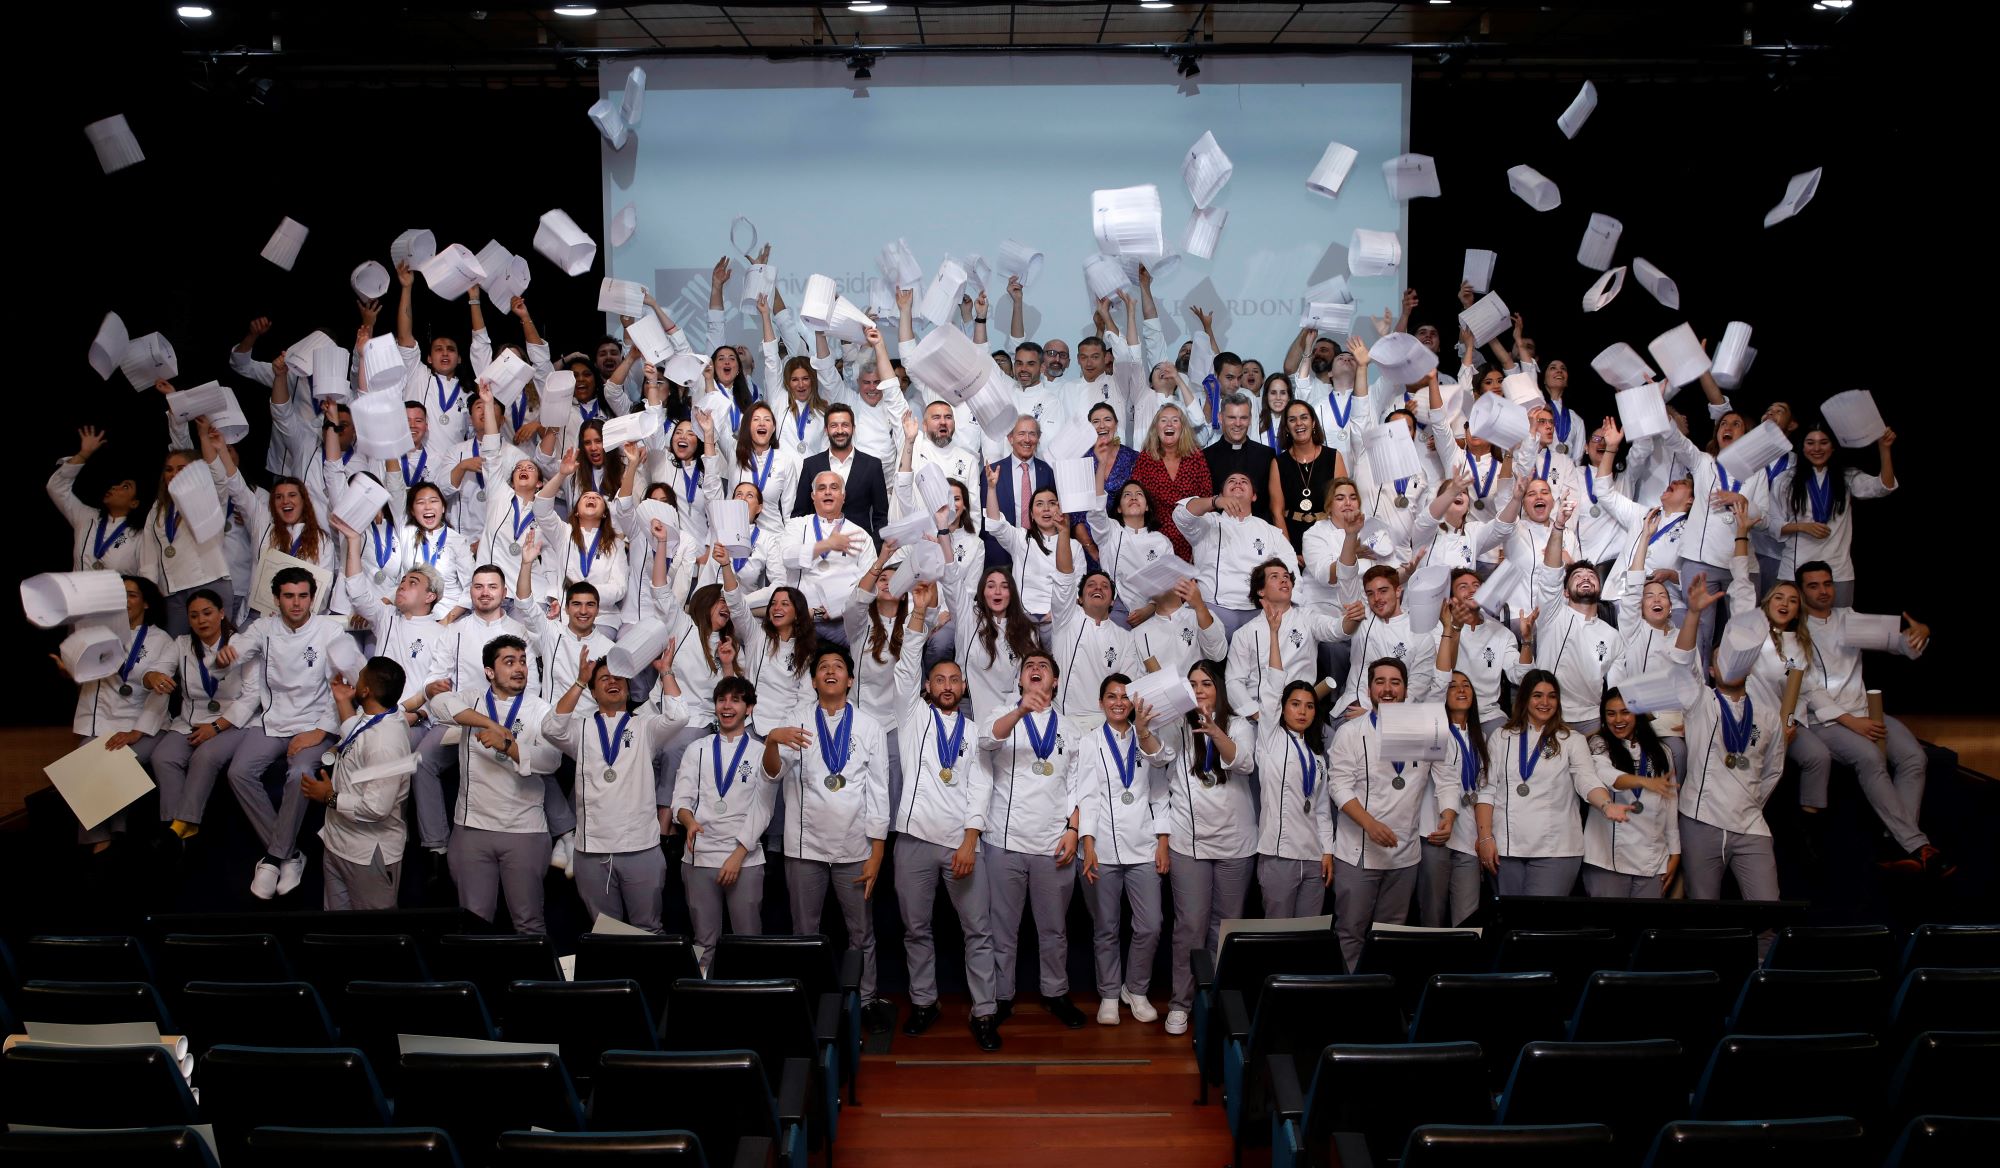 Le Cordon Bleu Madrid graduates one of its largest promotions with chef Iván Cerdeño as the patron
